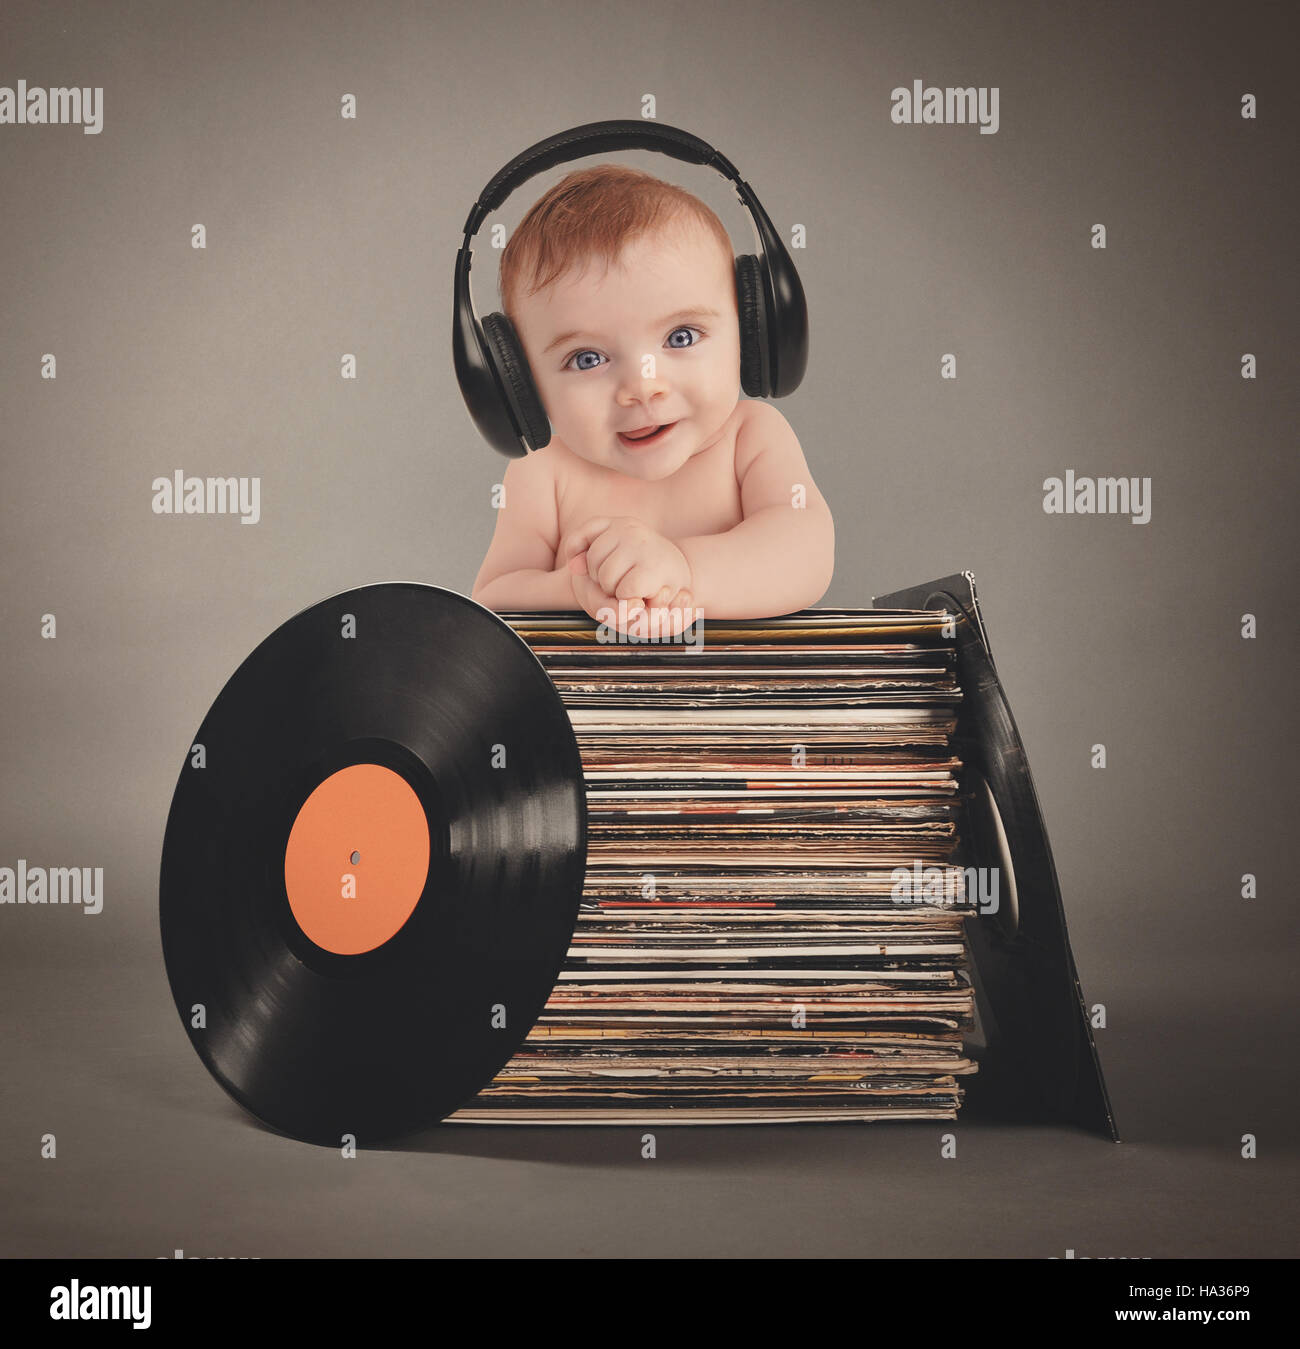 Ein kleines Baby trägt Musik Kopfhörer mit retro-Vinyl-Platten auf einem  isolierten grauen Hintergrund für eine Partei oder Entertainment-Konzept  Stockfotografie - Alamy